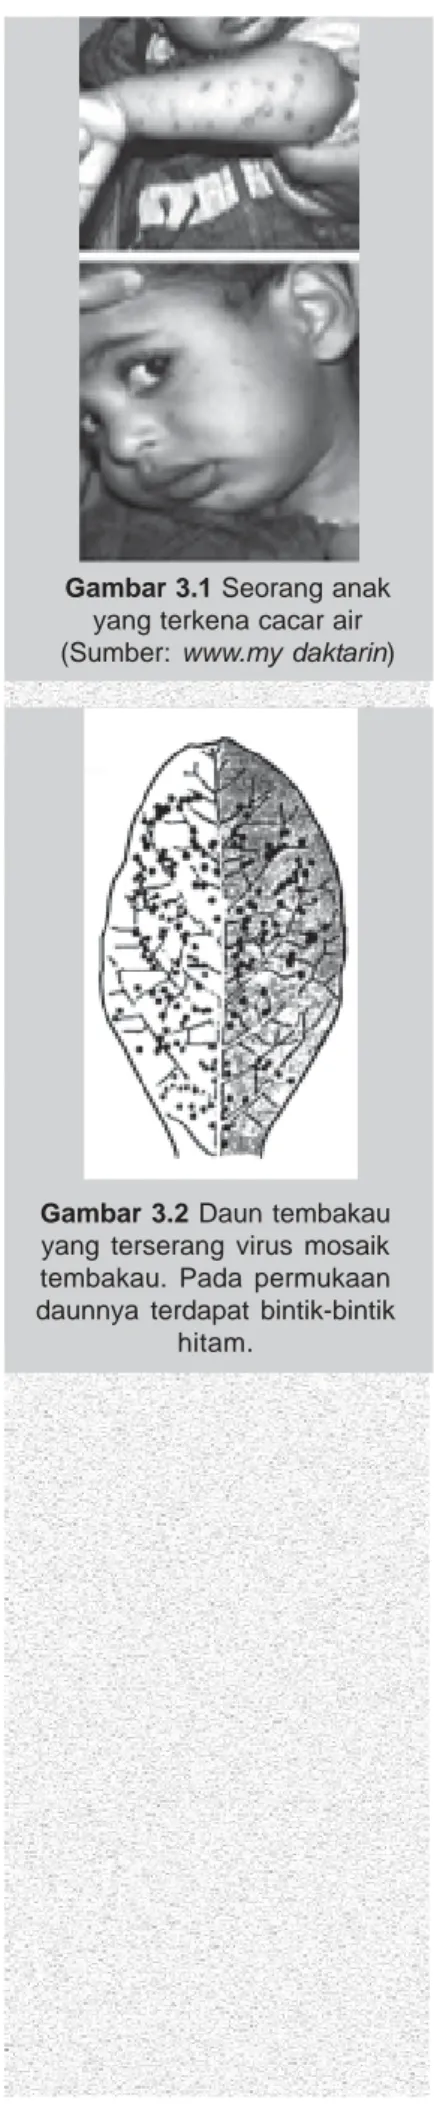 Gambar 3.2 Daun tembakau yang terserang virus mosaik tembakau. Pada permukaan daunnya terdapat bintik-bintik